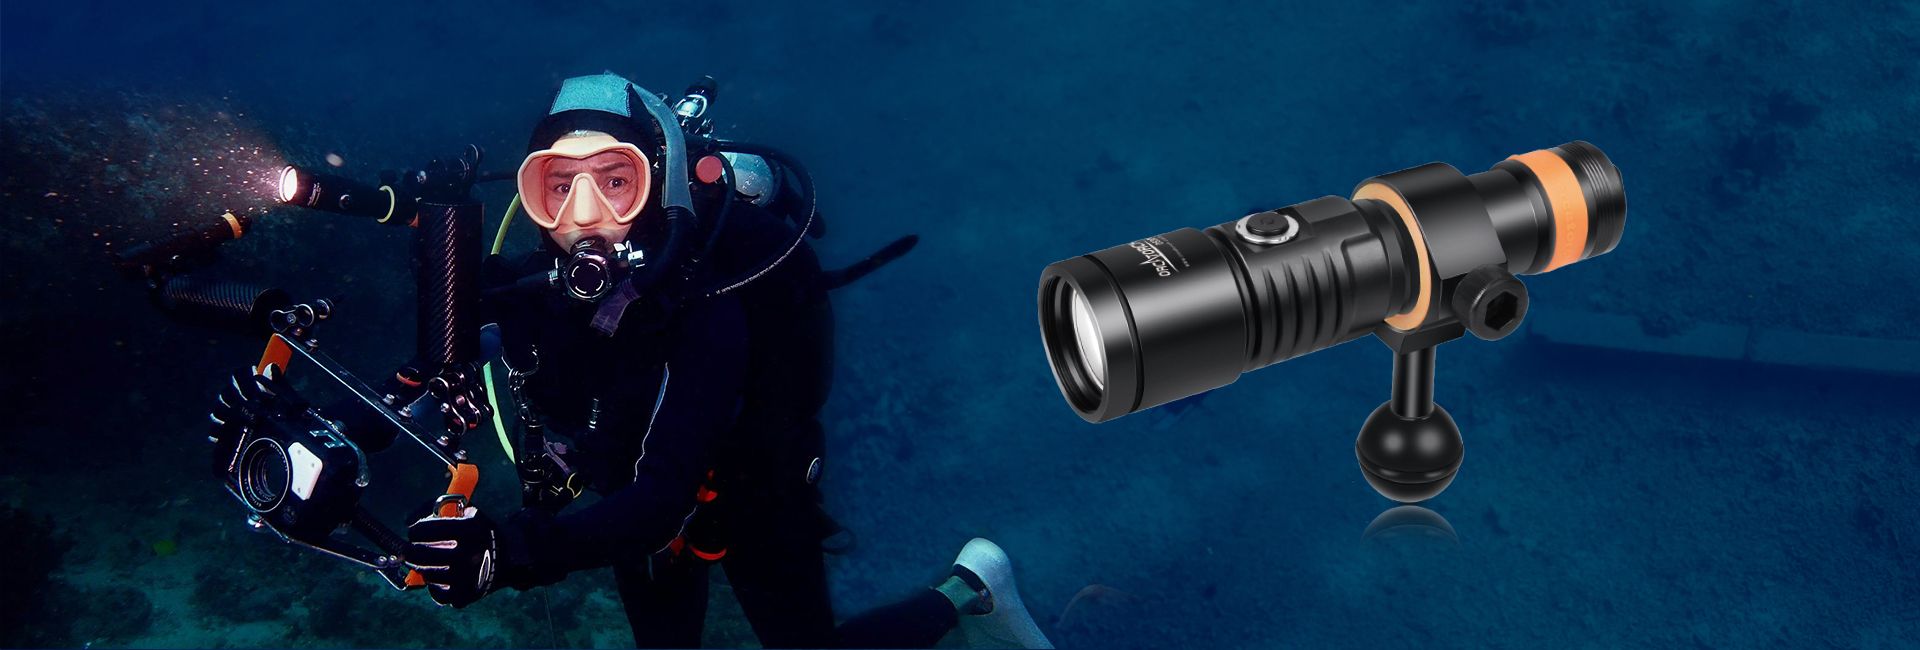 D710V 潜水摄影补光灯